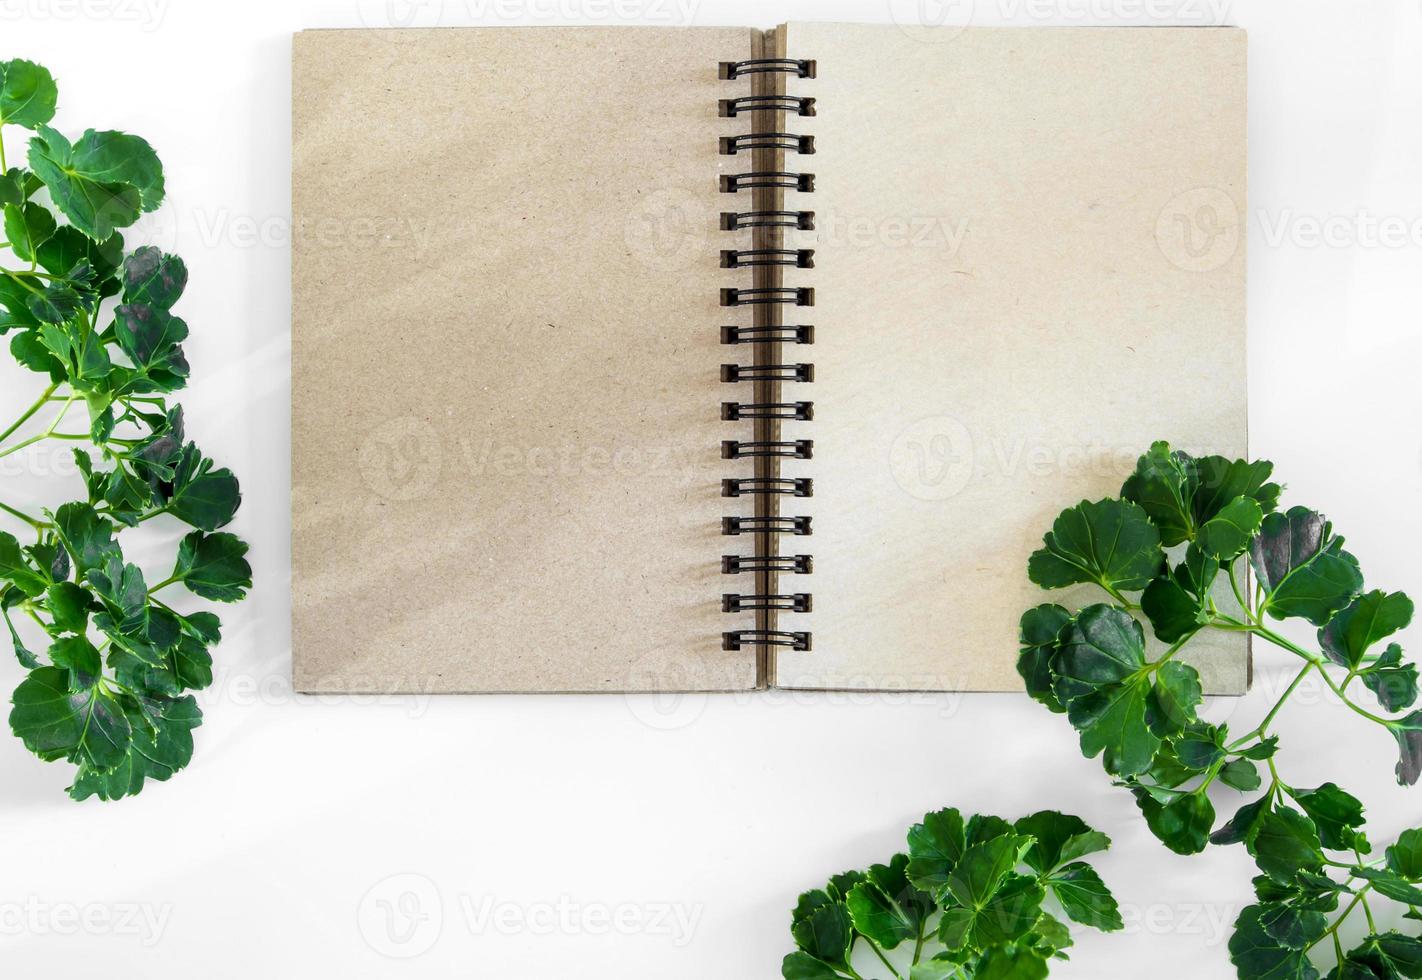 cuaderno de espiral de papel kraft con hojas verdes como marco foto